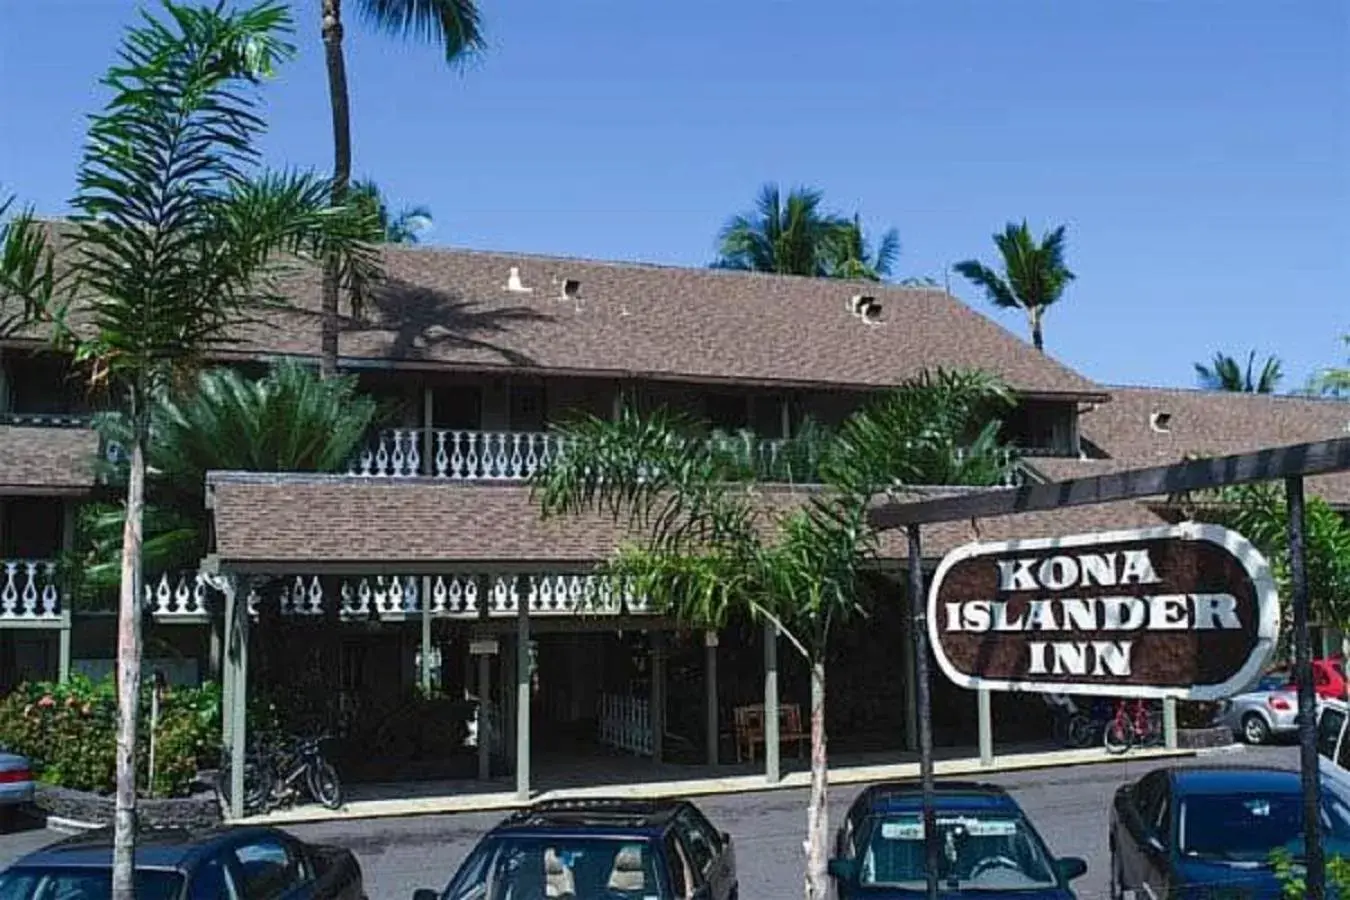 Facade/entrance, Property Building in Kona Islander